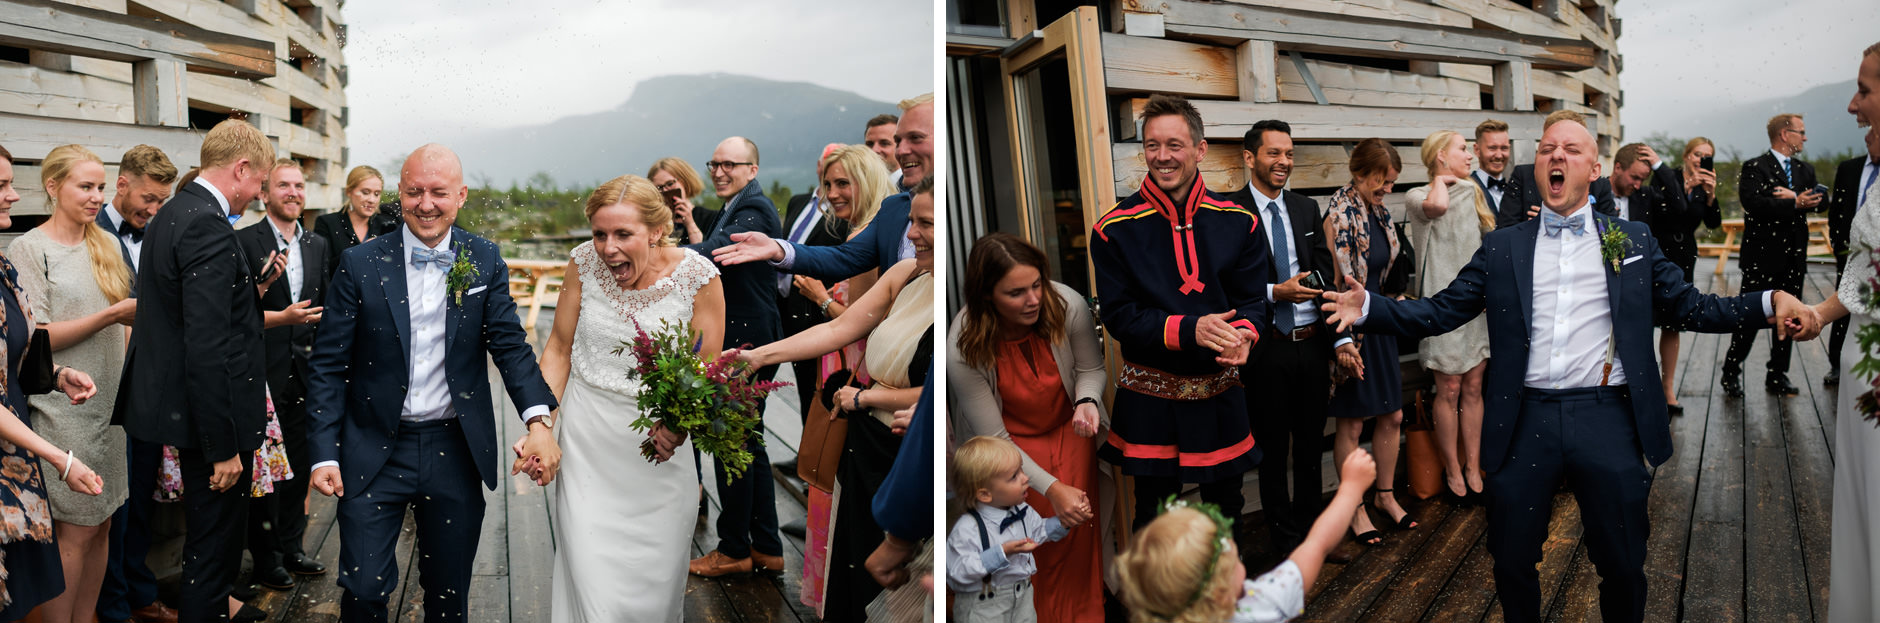 sweden north wedding